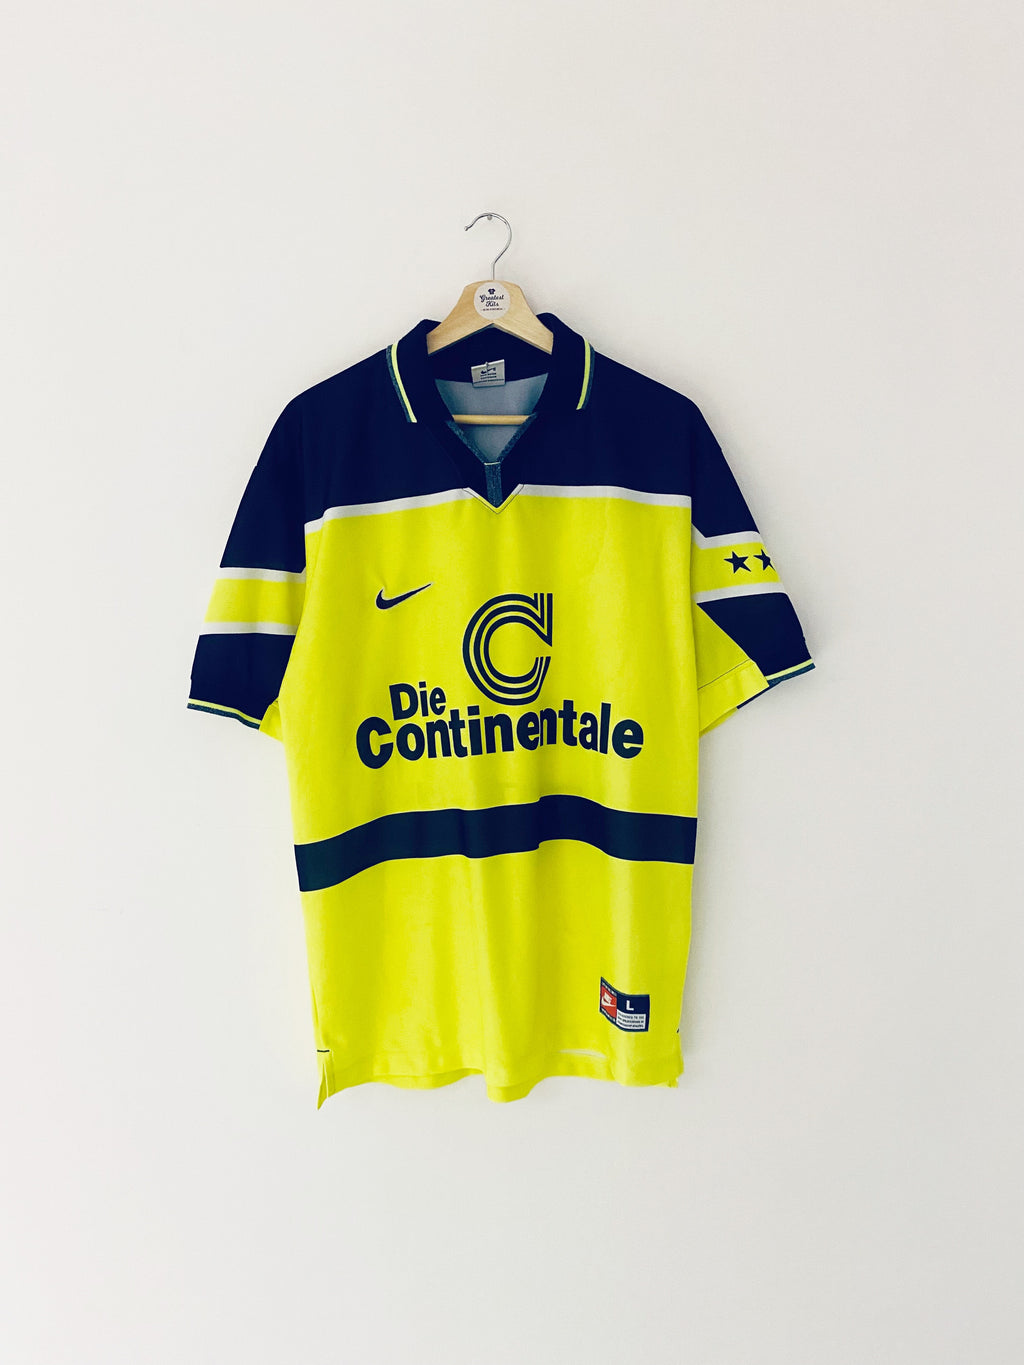 1997/98 Borussia Dortmund Home Shirt (L) 8.5/10